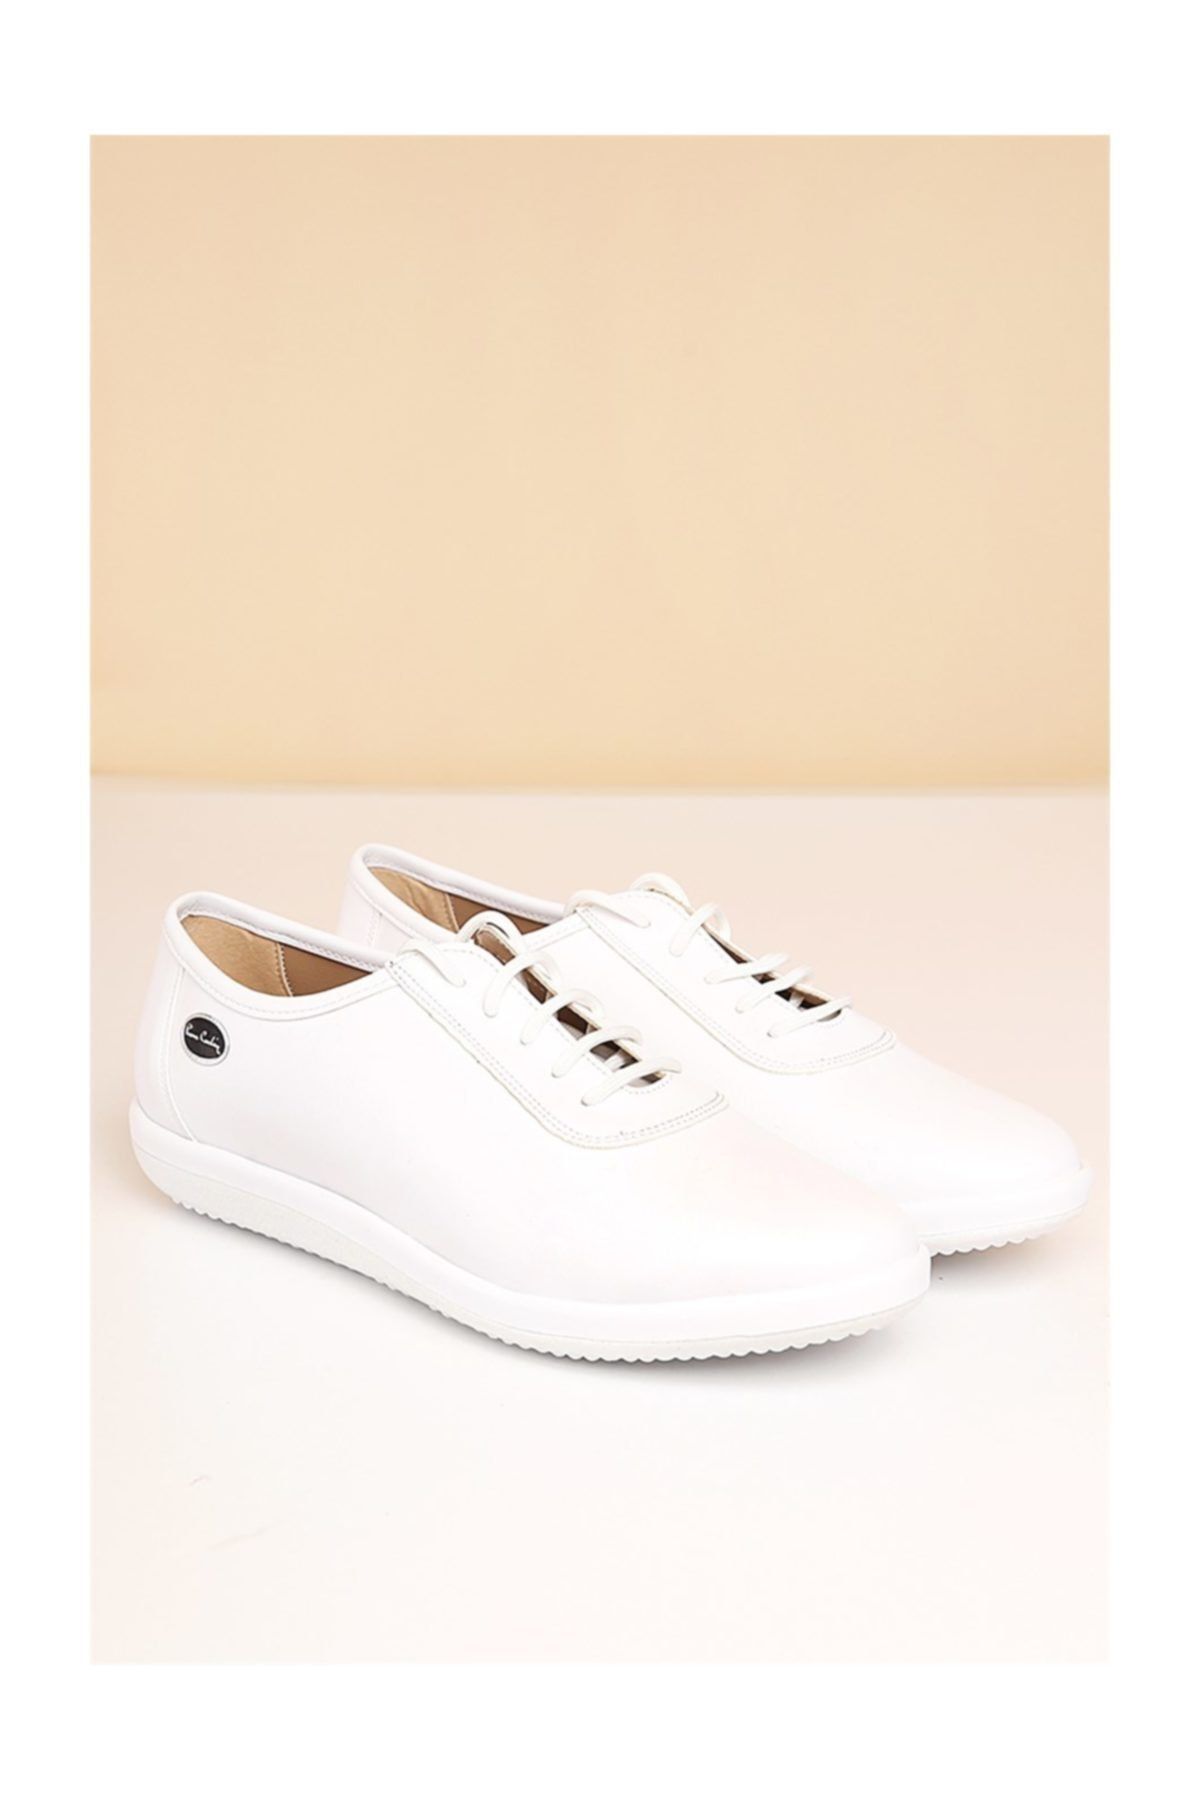 Pierre Cardin Pc-50105 Beyaz Kadın Ayakkabı